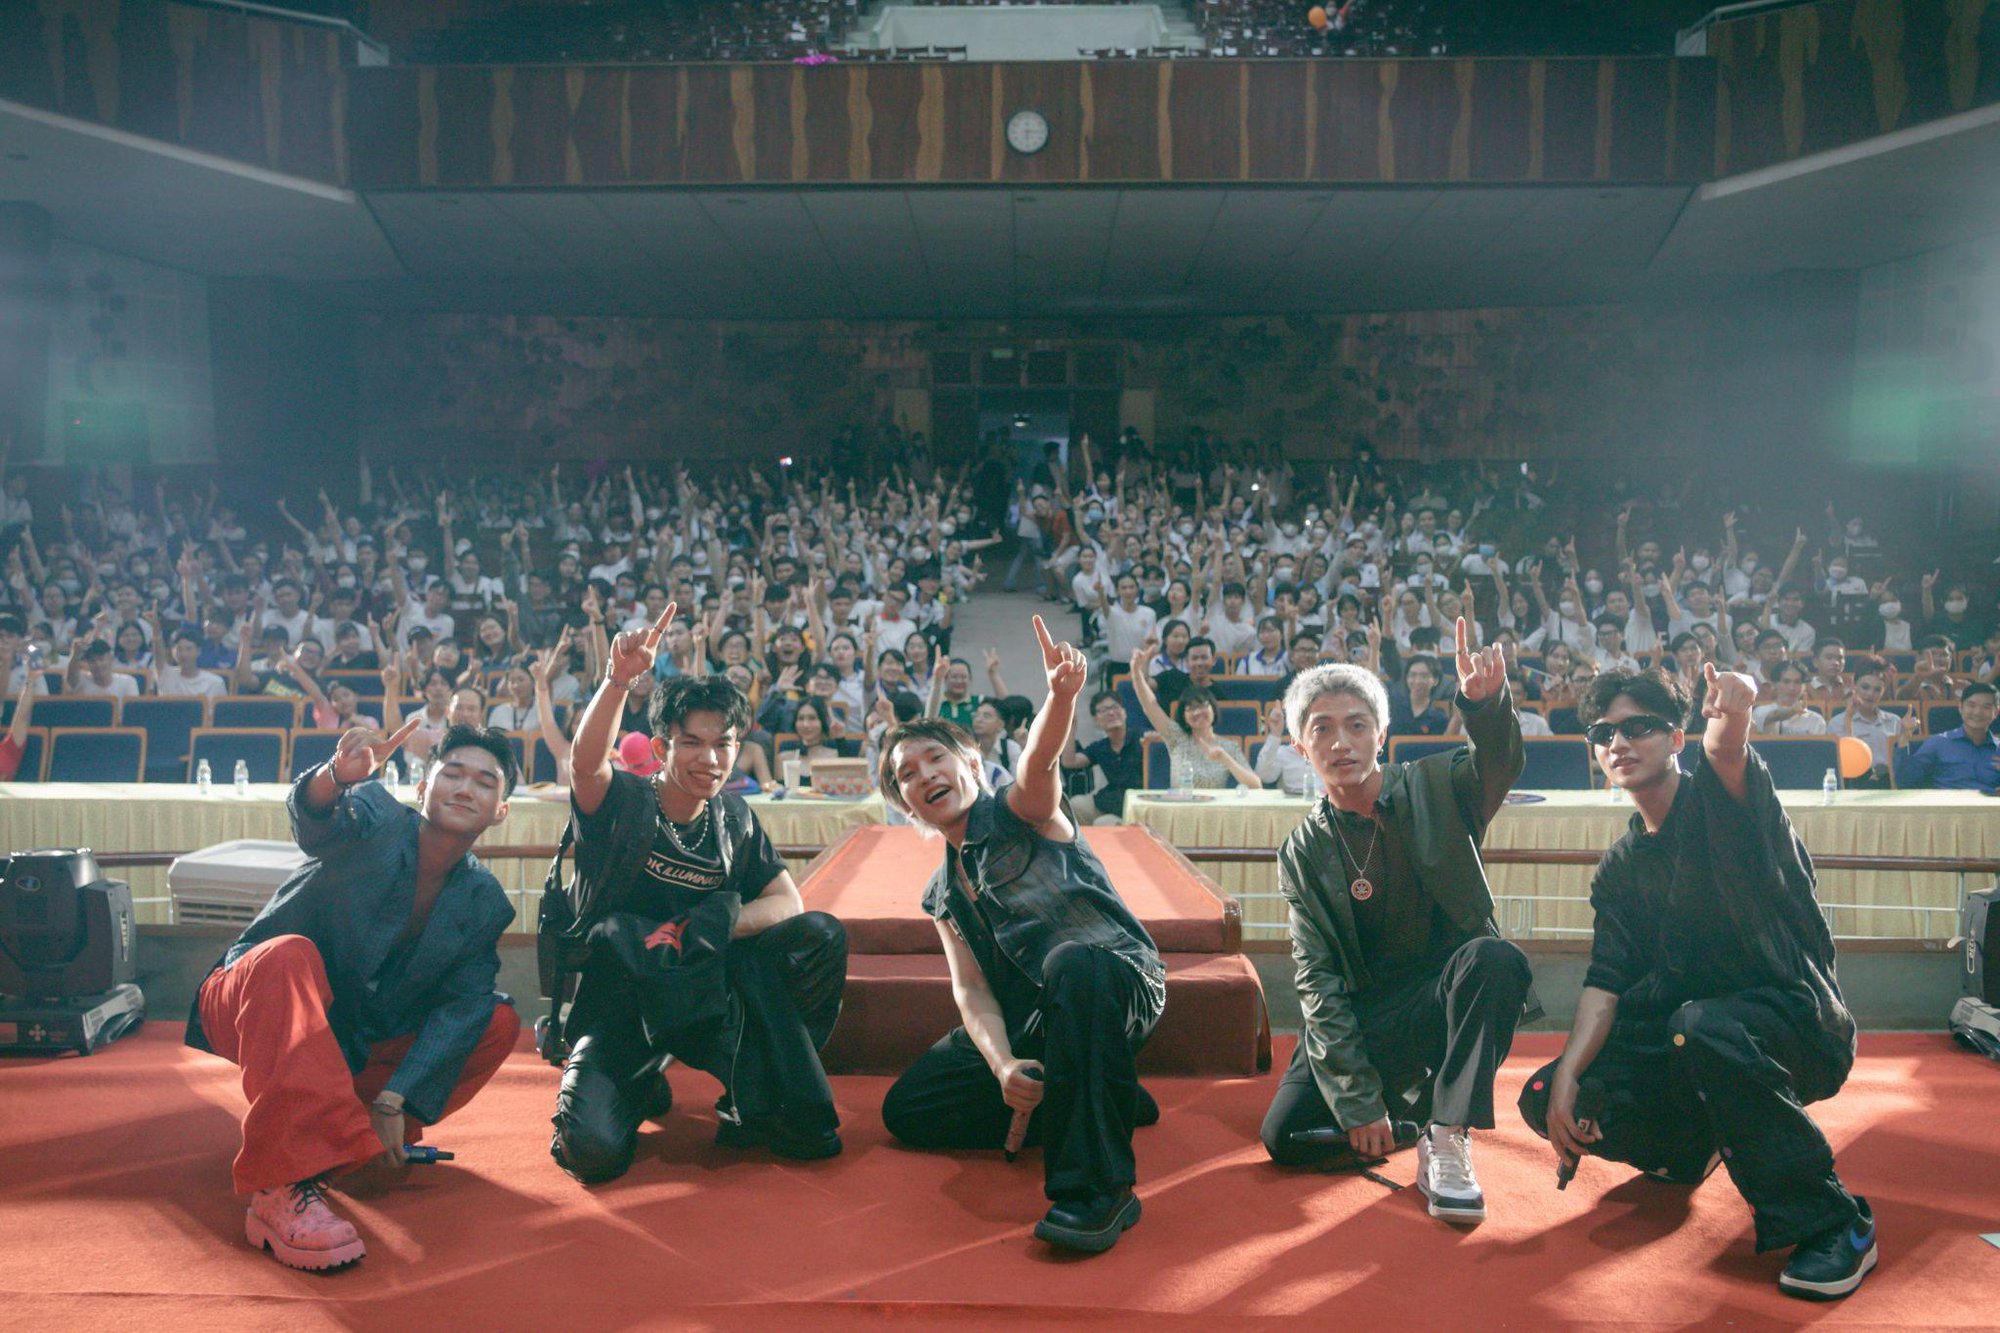 Sinh viên Cần Thơ “cháy hết mình” cùng Minh Tú và Lynk Lee trong SAFE-UNI Festival, cam kết luôn “Yêu An Toàn” - Ảnh 7.